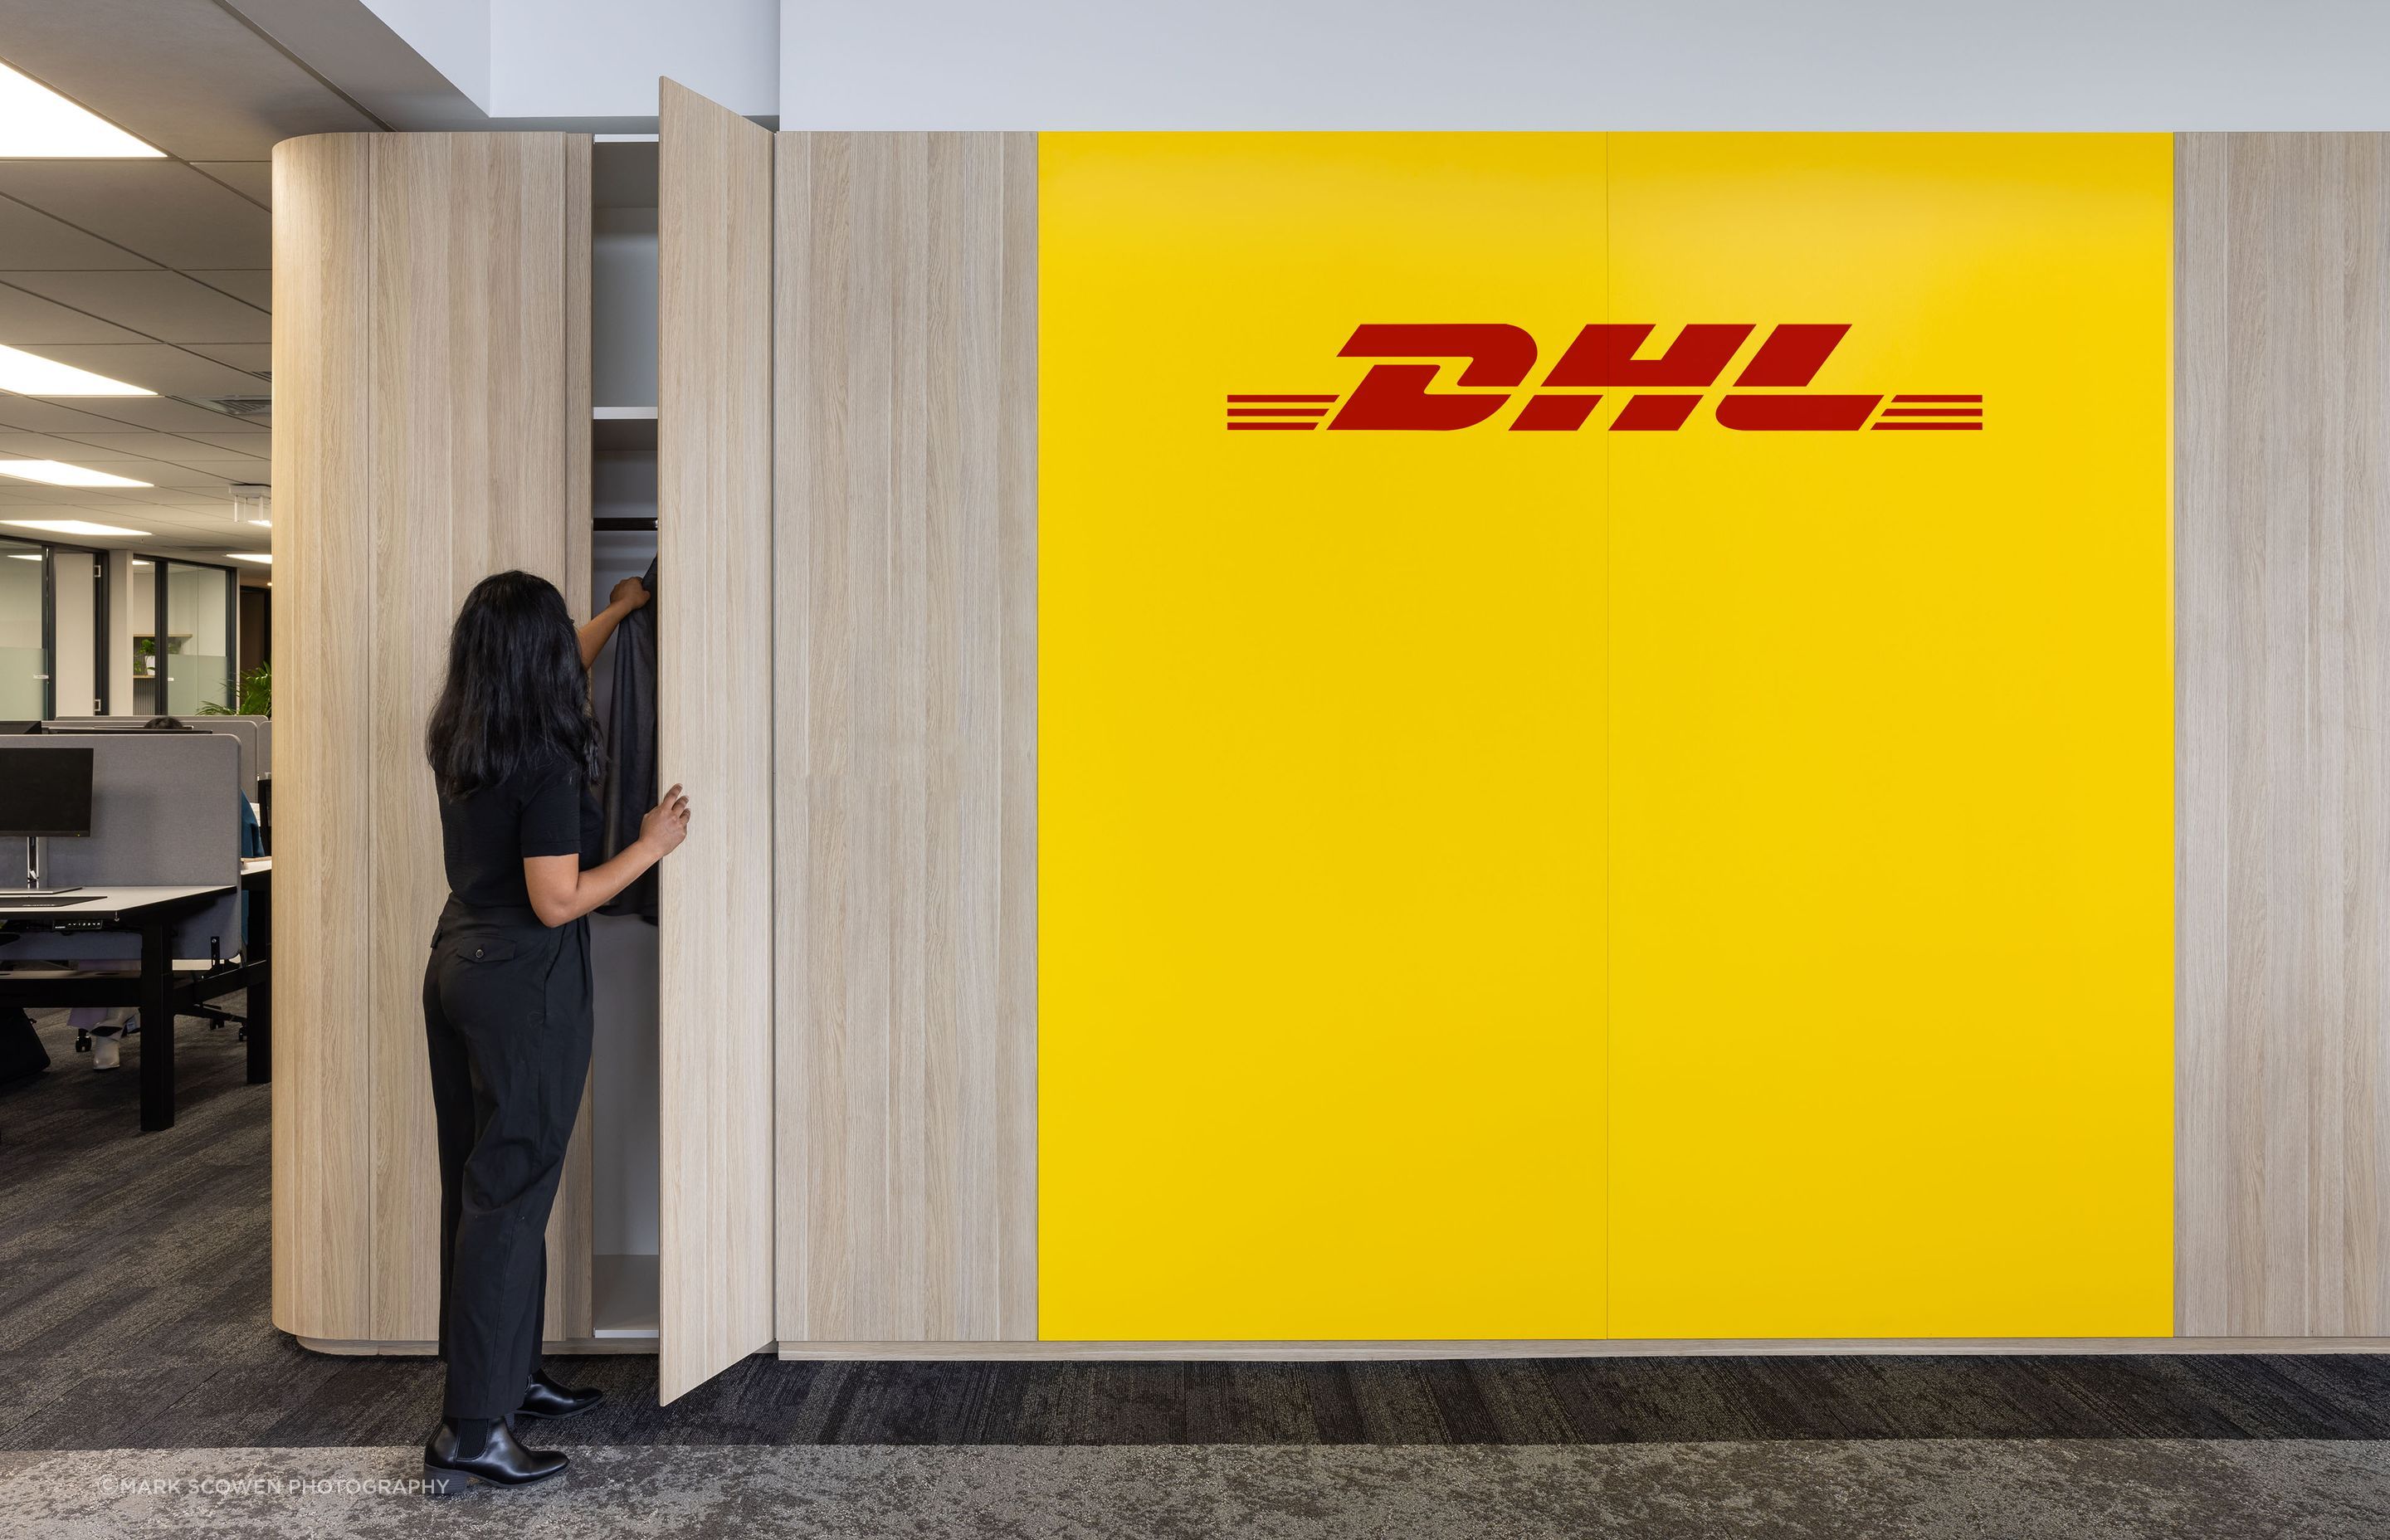 DHL-AucklandWorkplace-Design1-v4.jpg